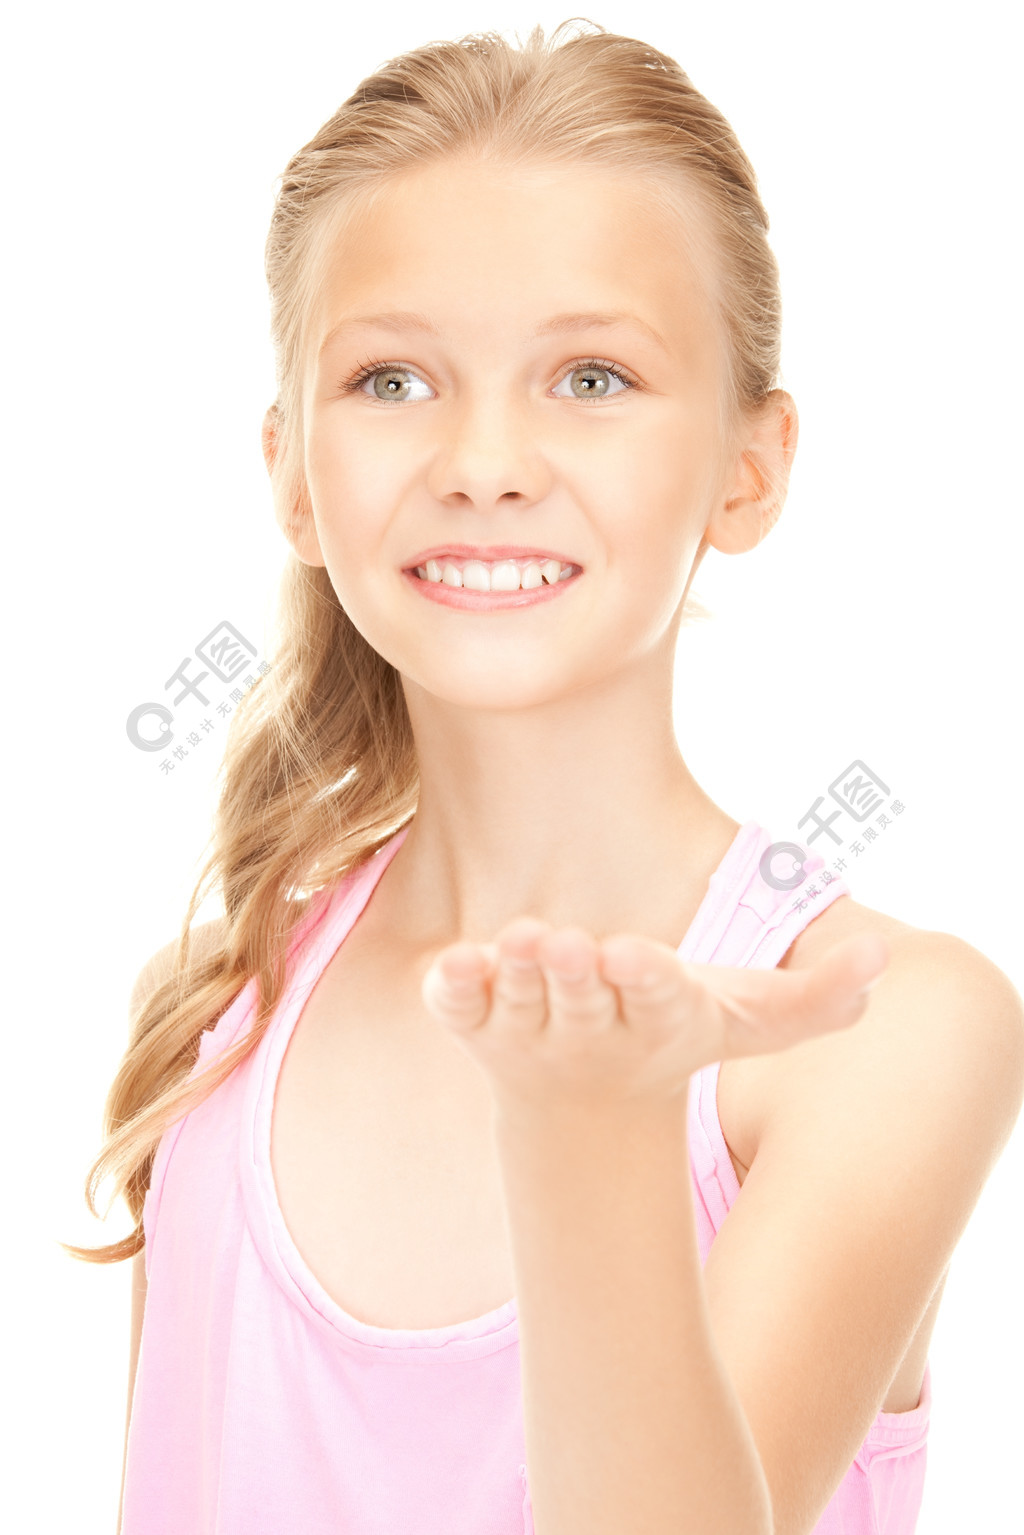 小女孩抱手表情包图片